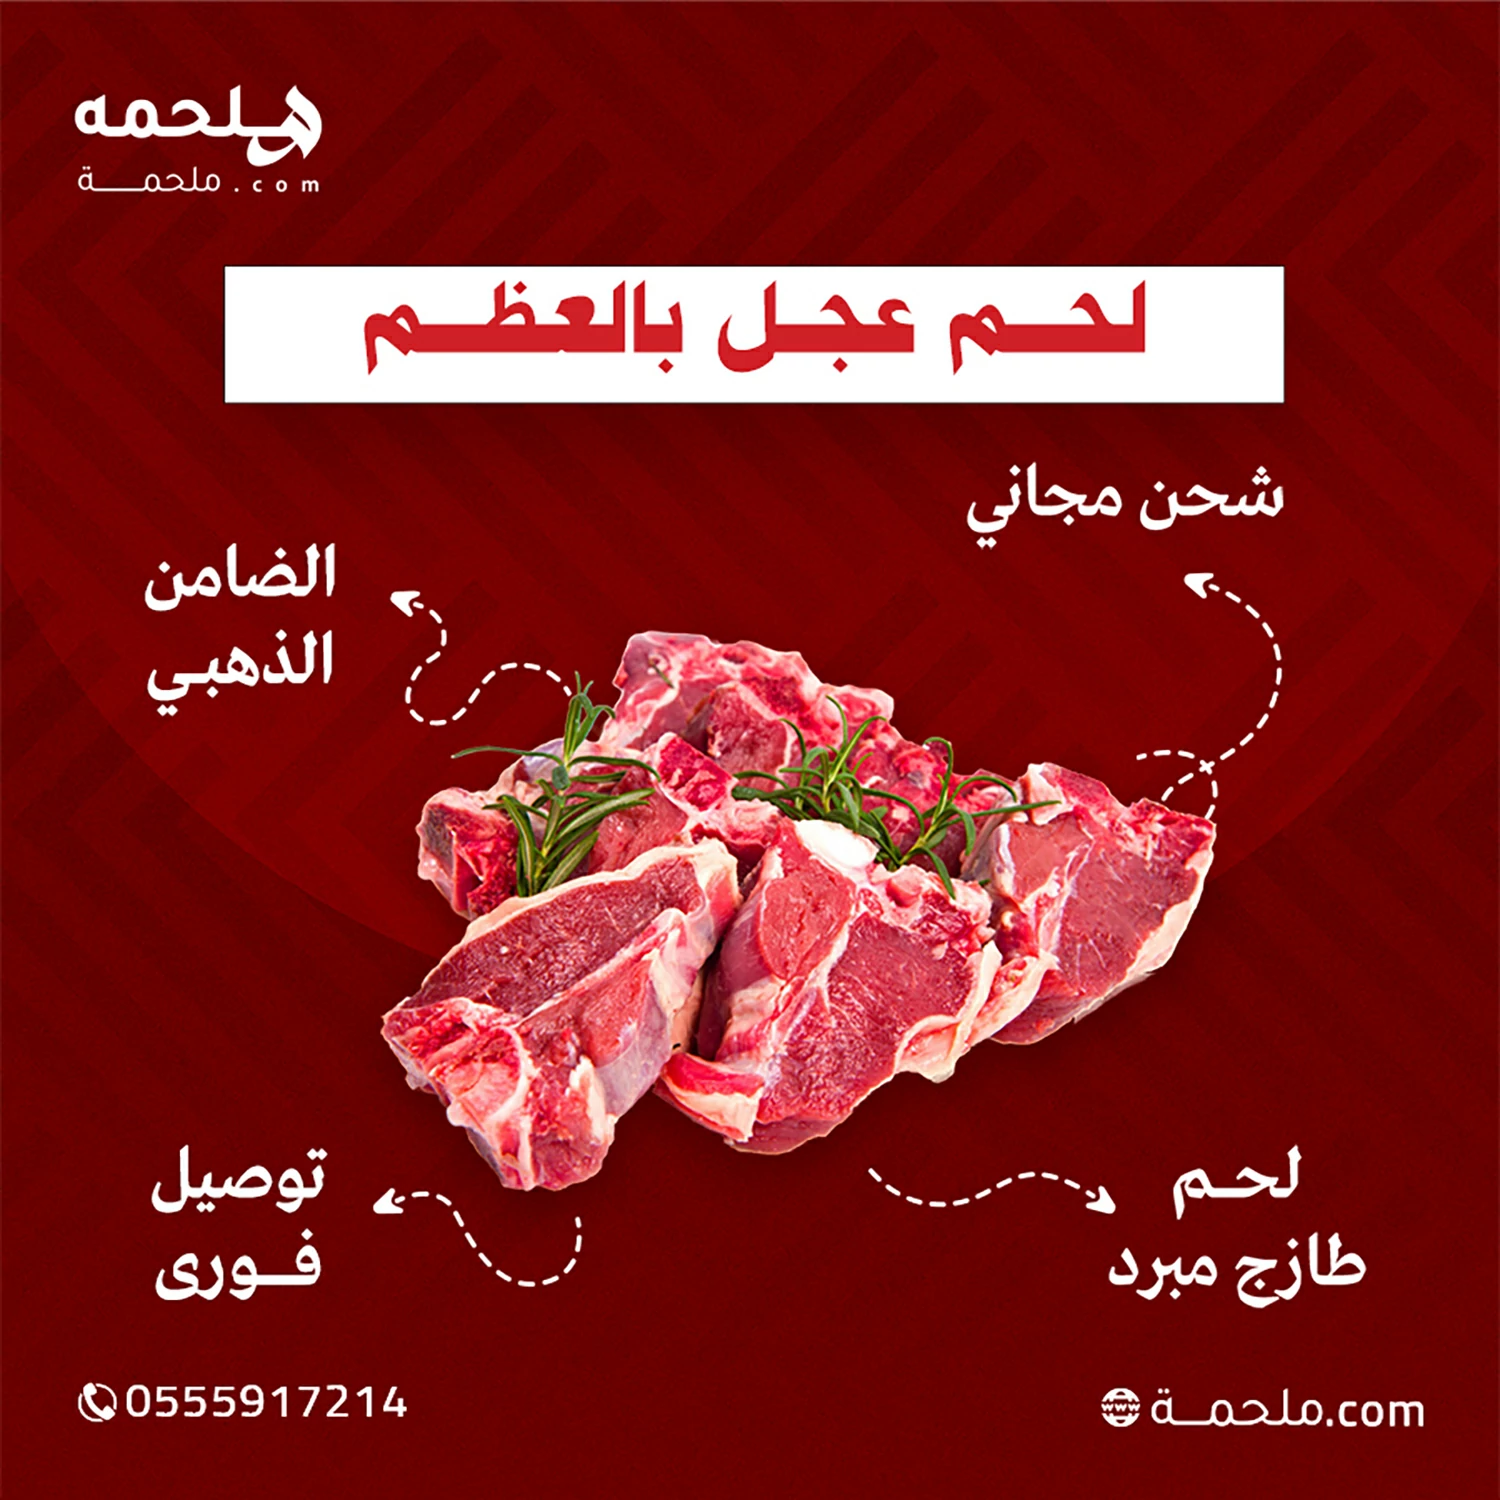 (العربية) لحم عجل بالعظم